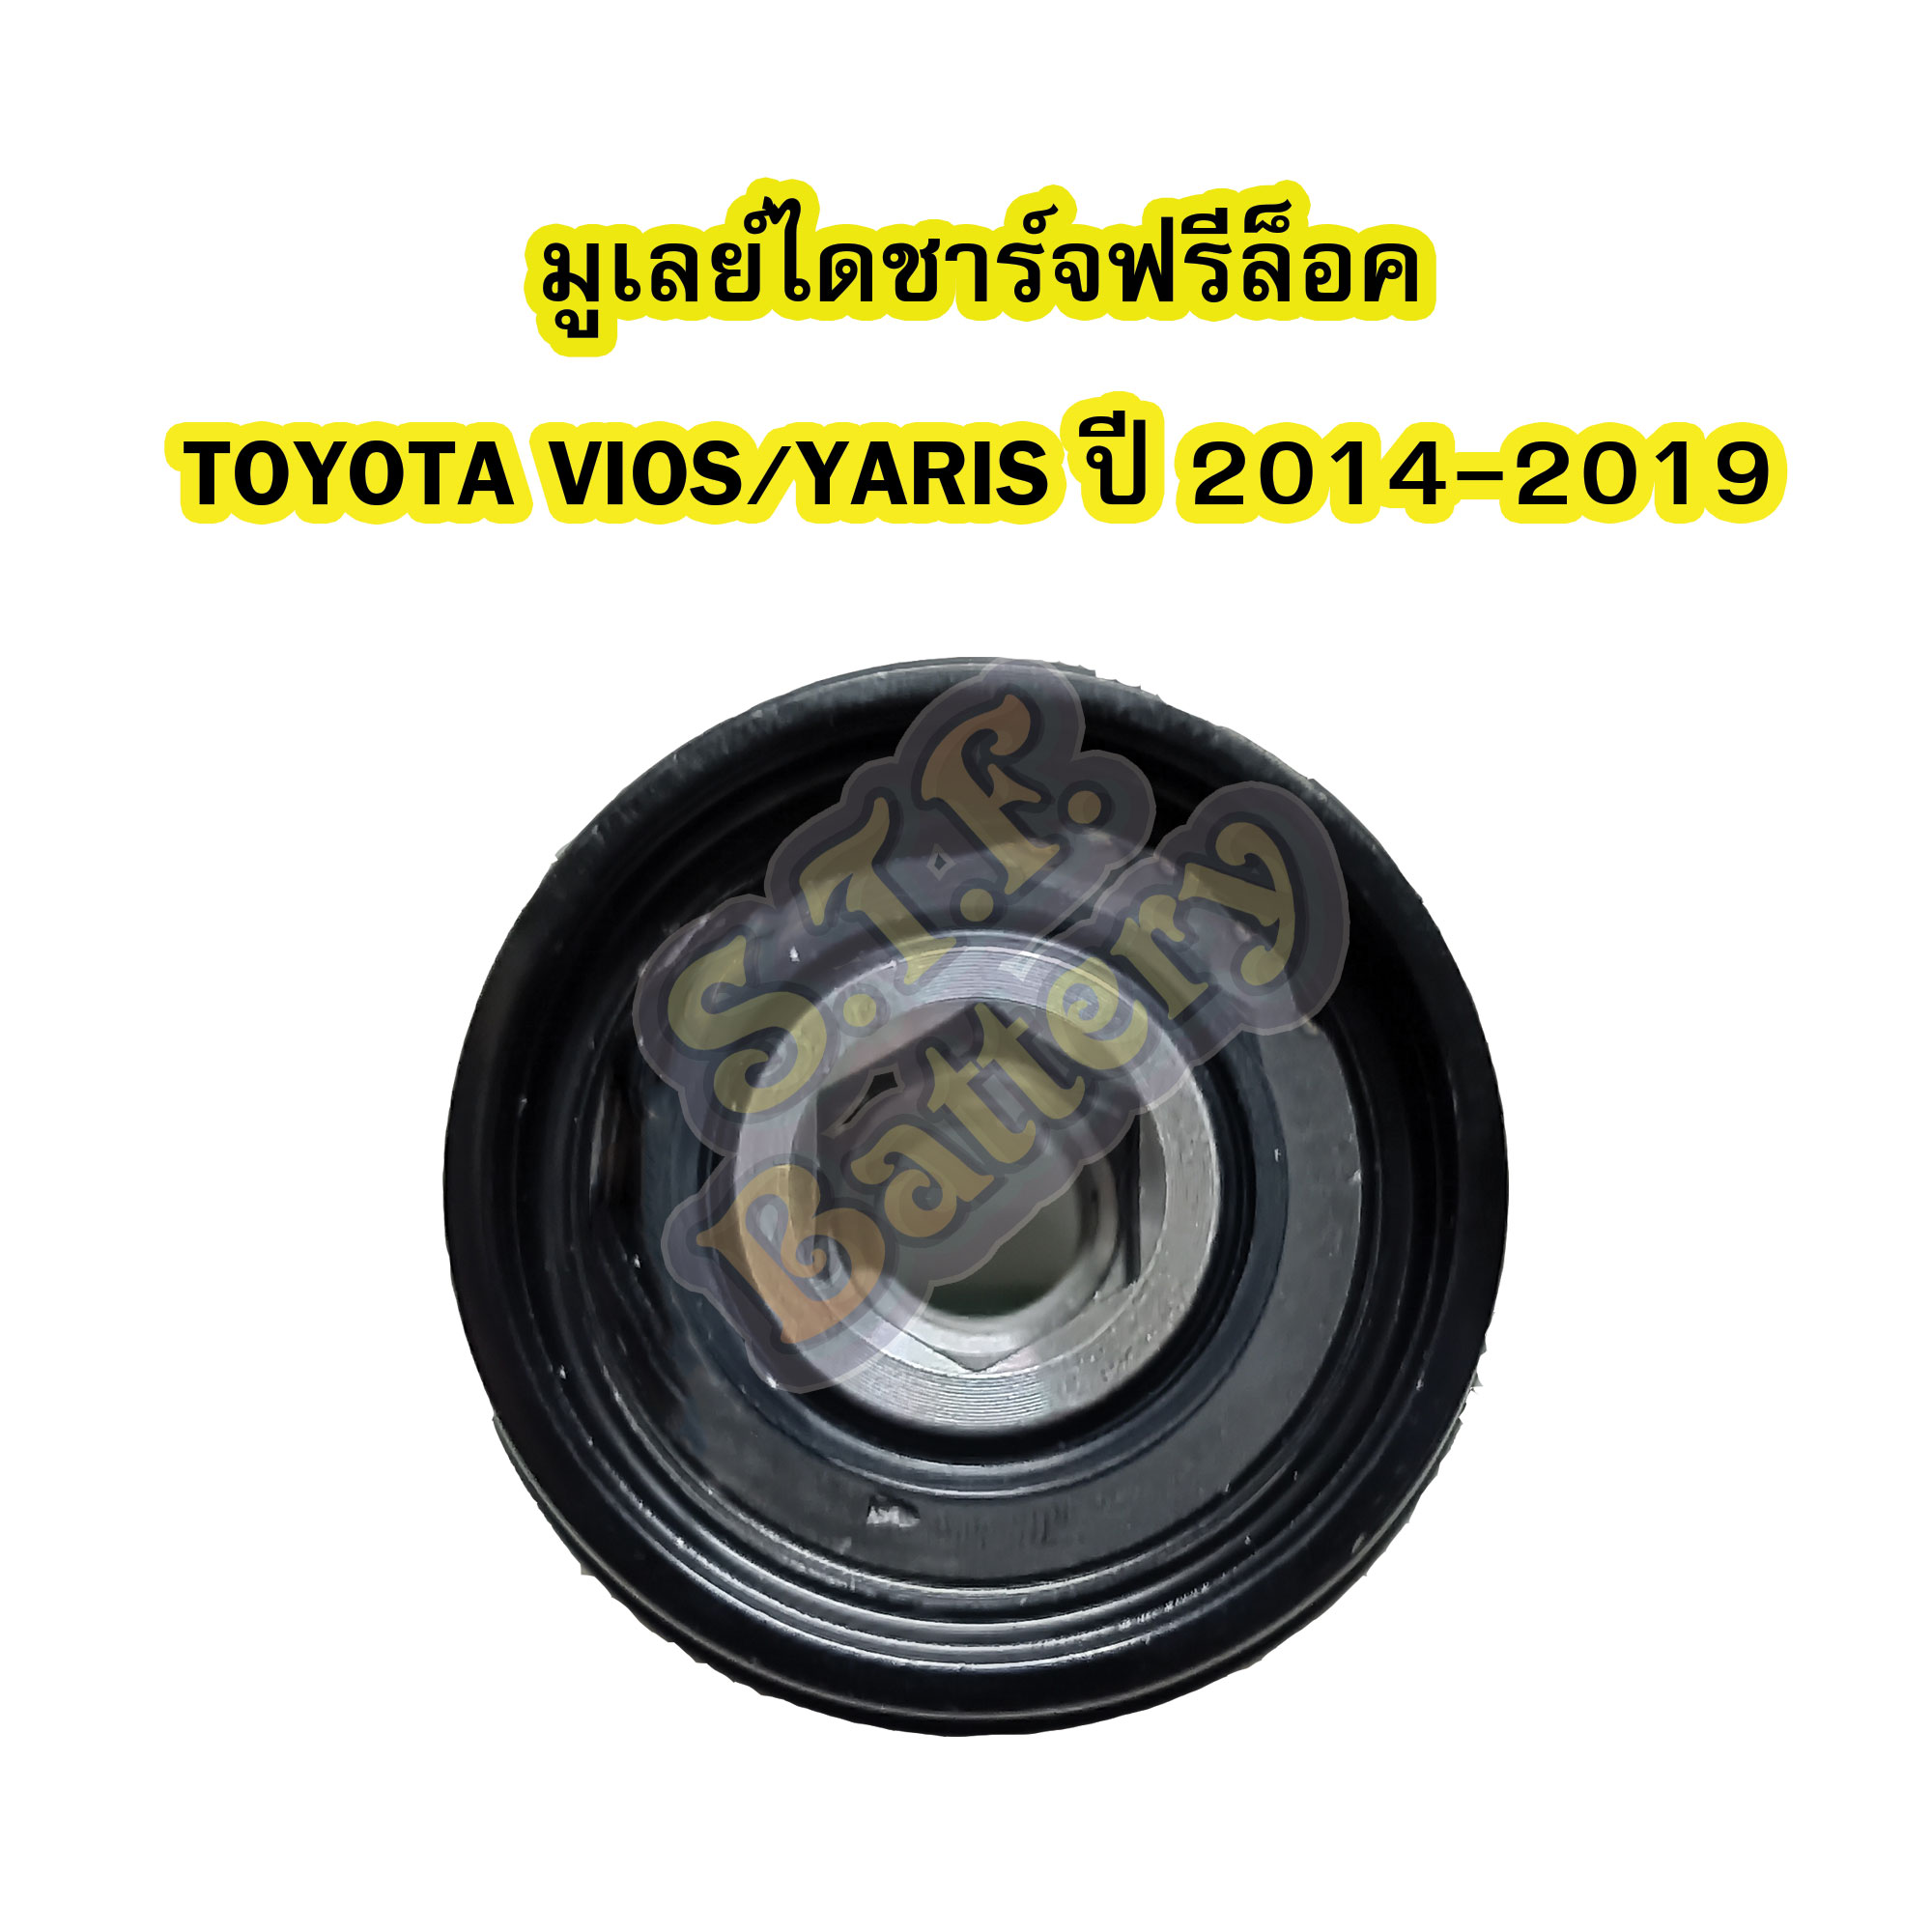 พูเลย์/มูเลย์ไดชาร์จฟรีล็อค(Alternator Pulley Free lock) รถยนต์โตโยต้า วีออส/ยาริส (TOYOTA VIOS/YARIS) ปี 2014-2019